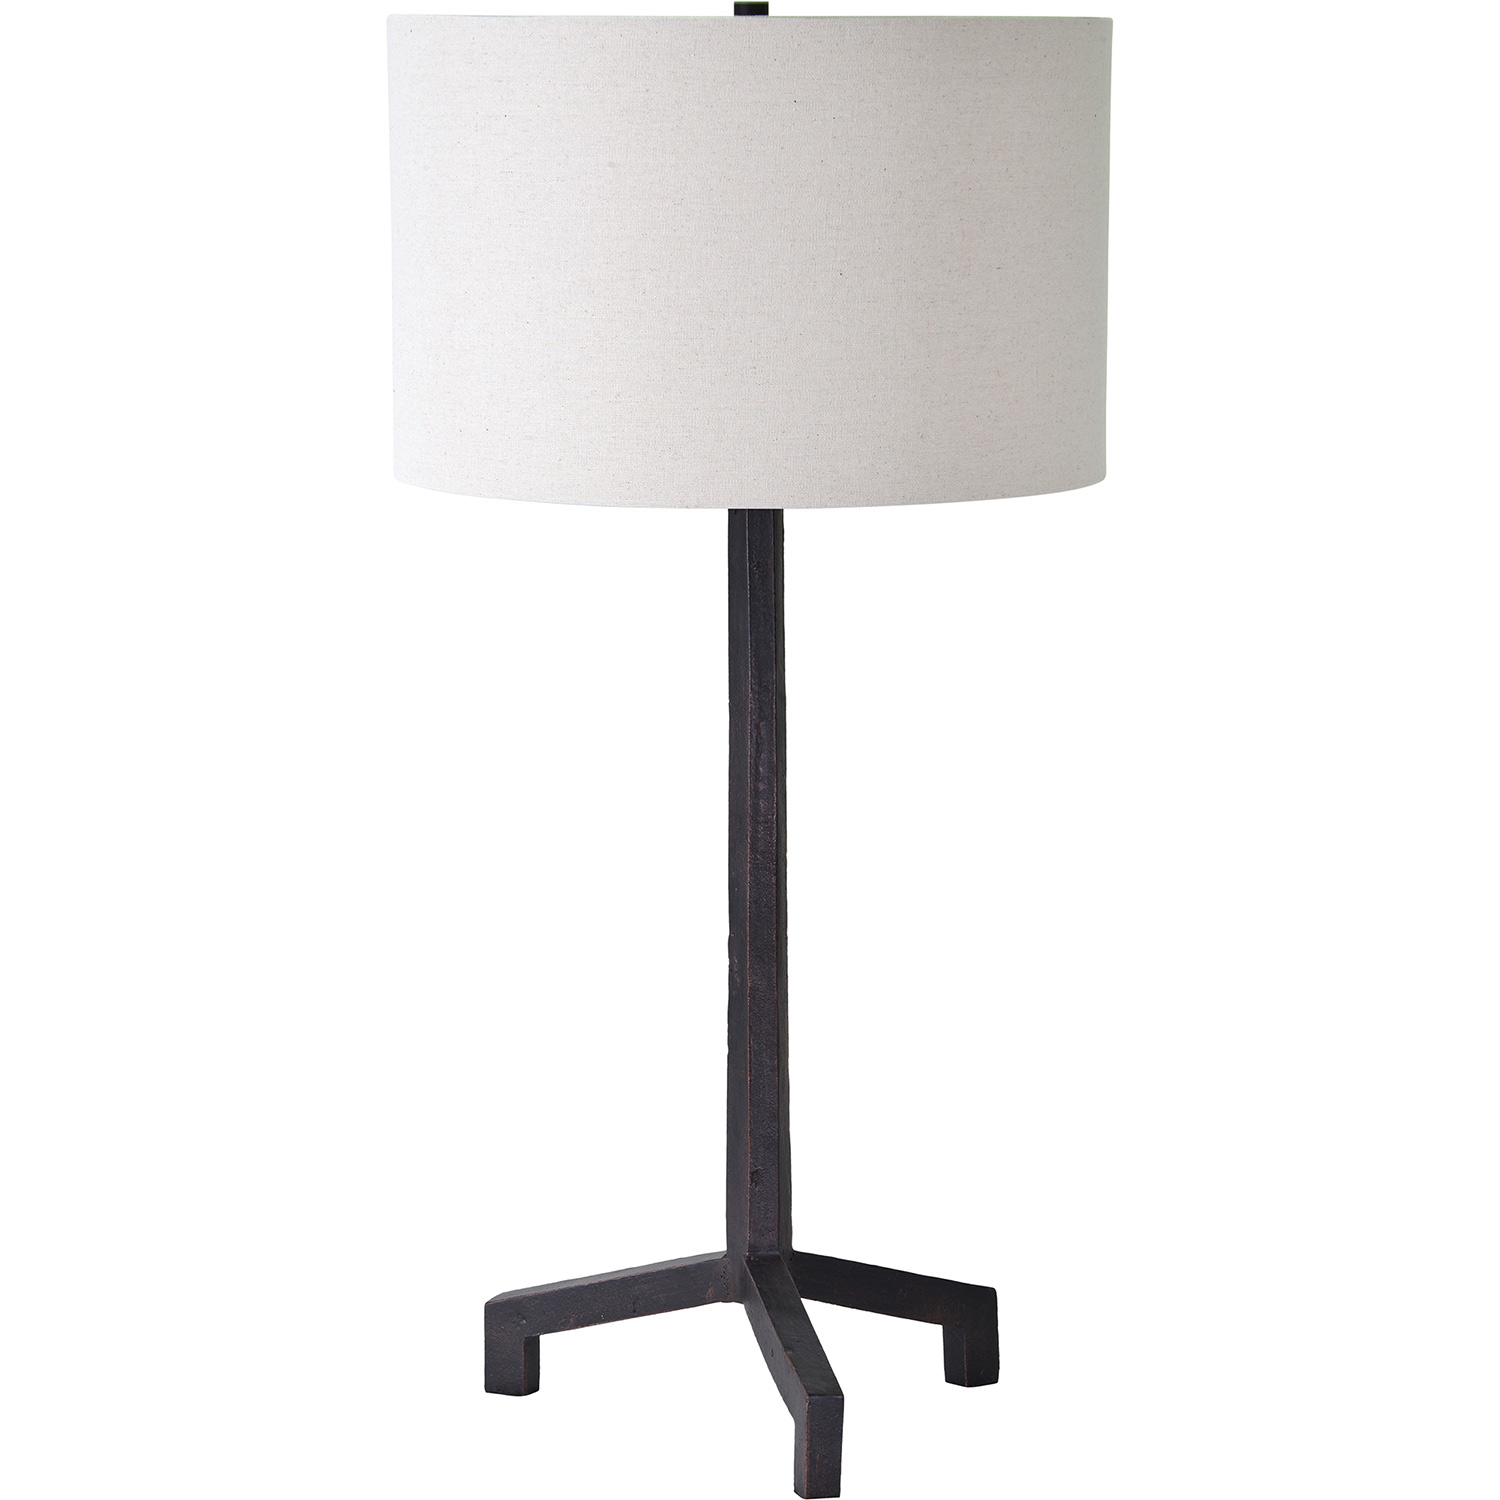 Ren-Wil Slayton Table Lamp - Black